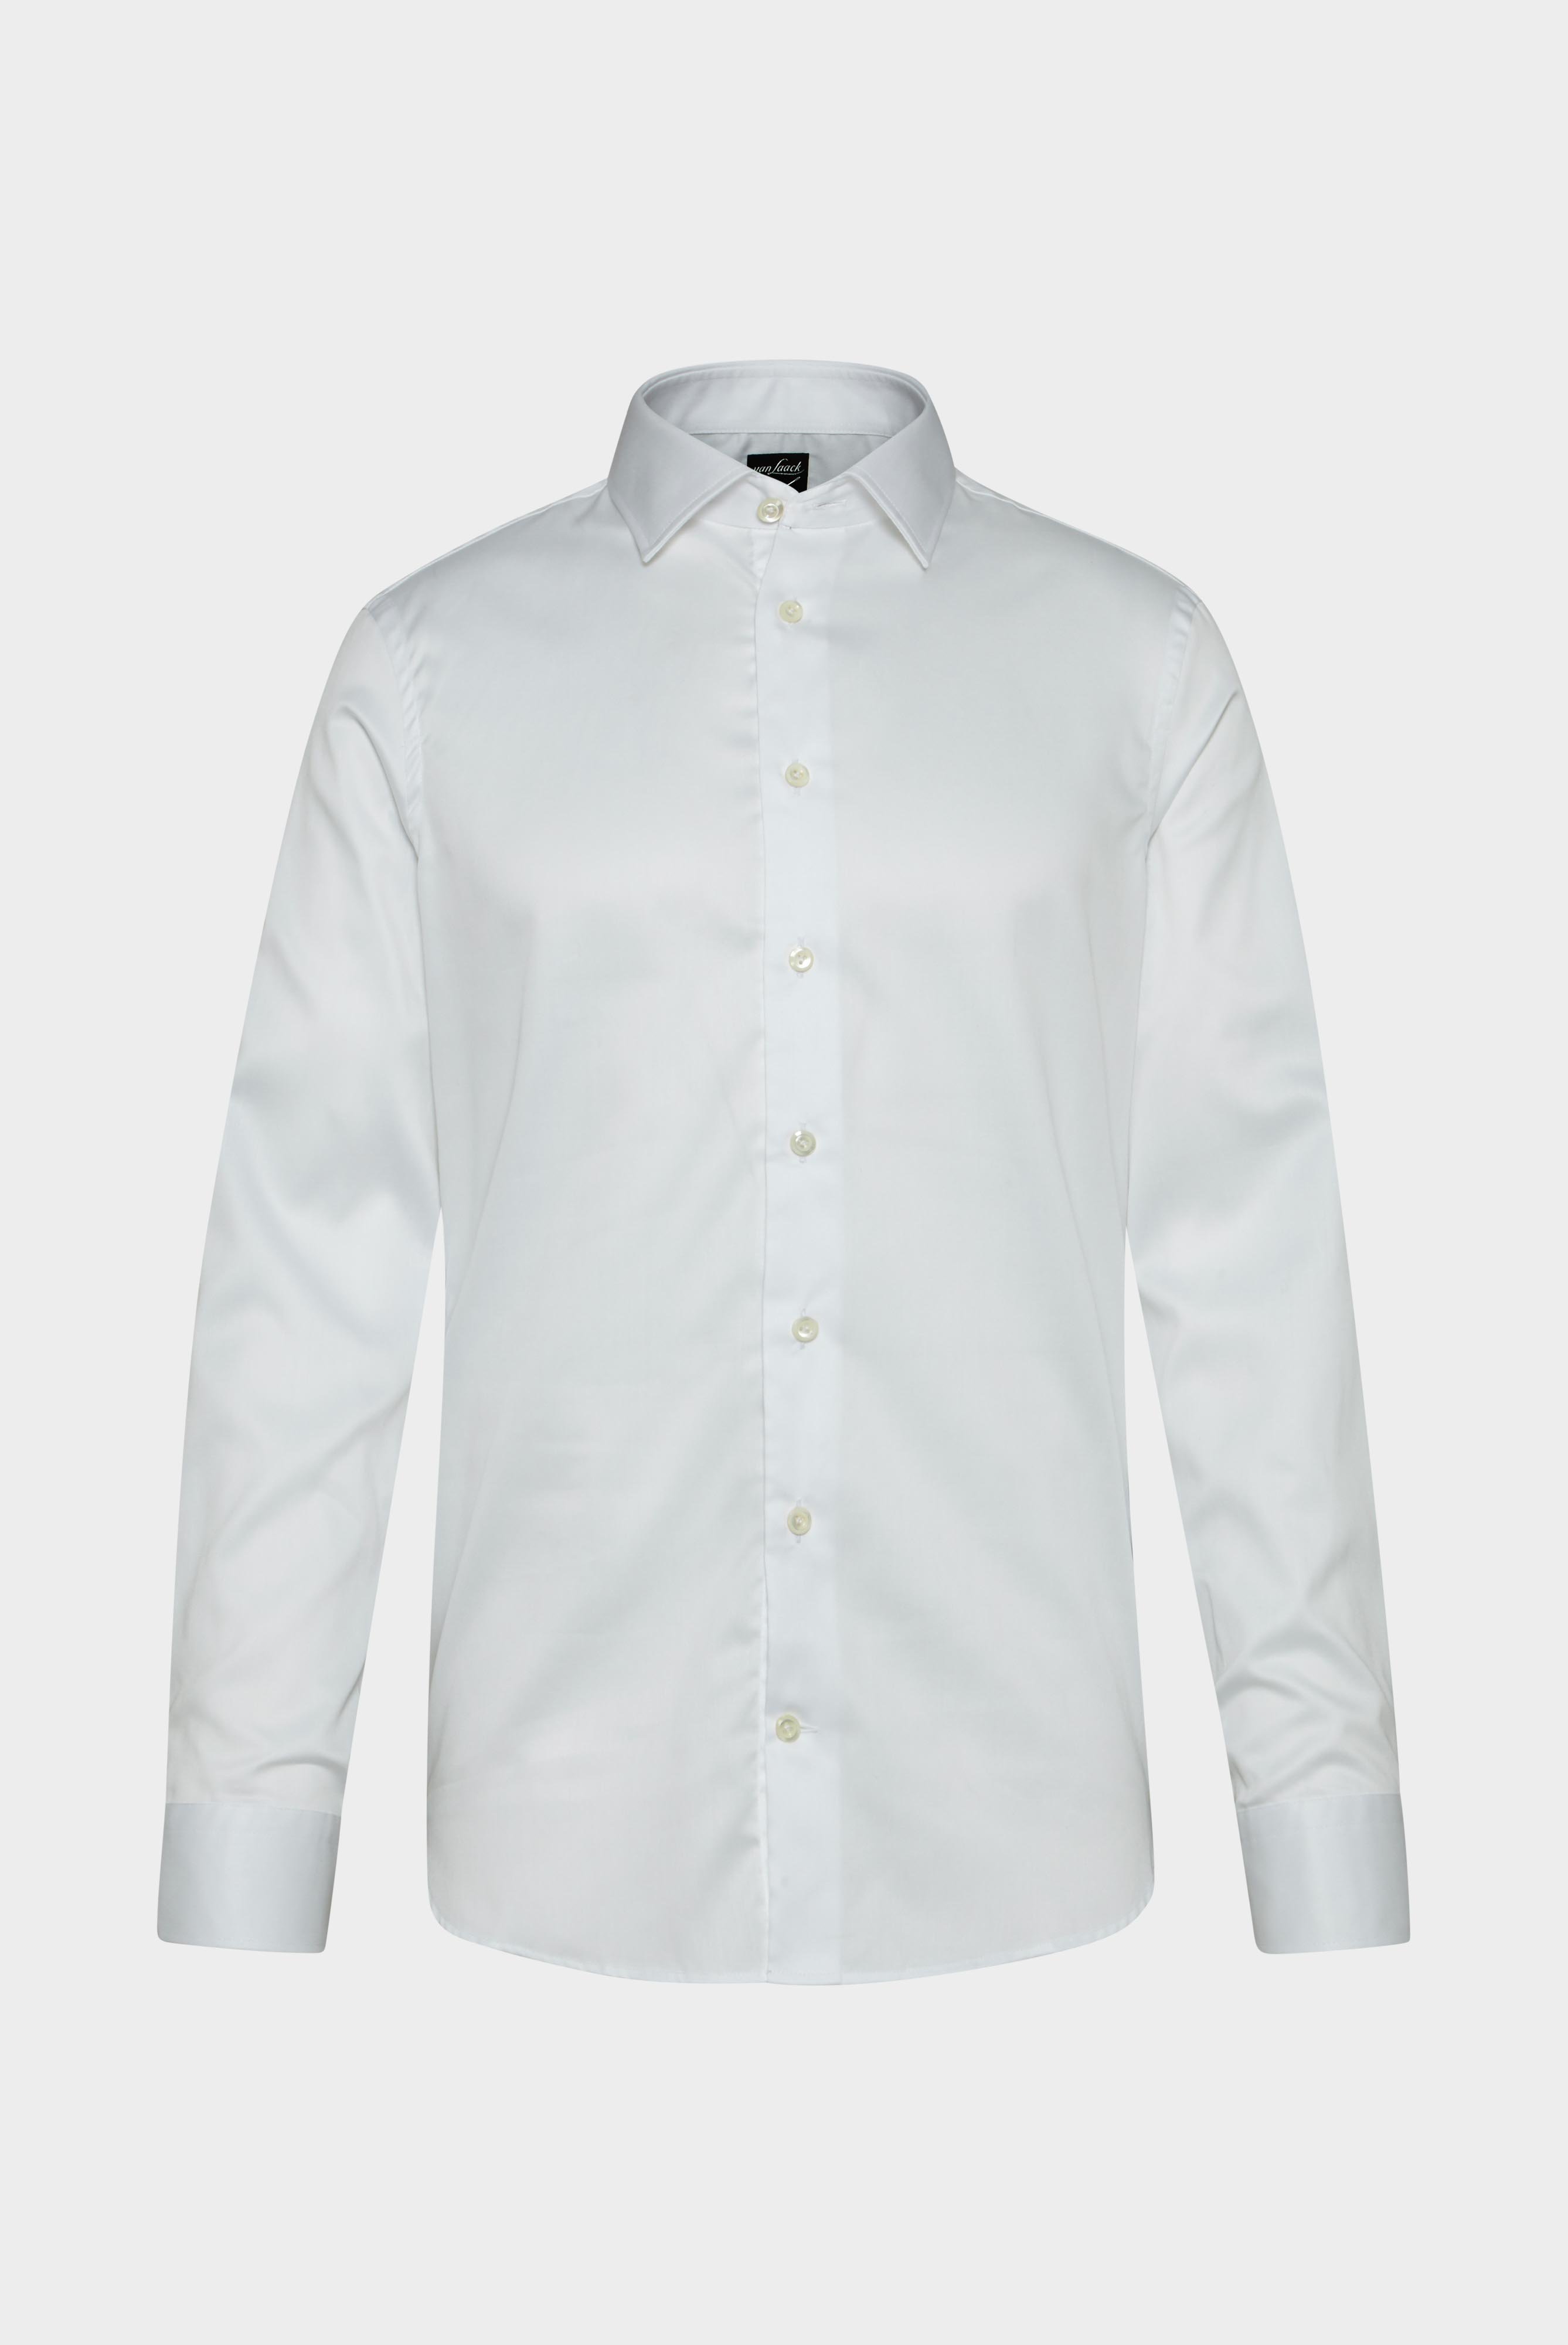 Bügelleichte Hemden+Bügelfreies Twill Hemd Slim Fit+20.2010.BQ.132241.000.42